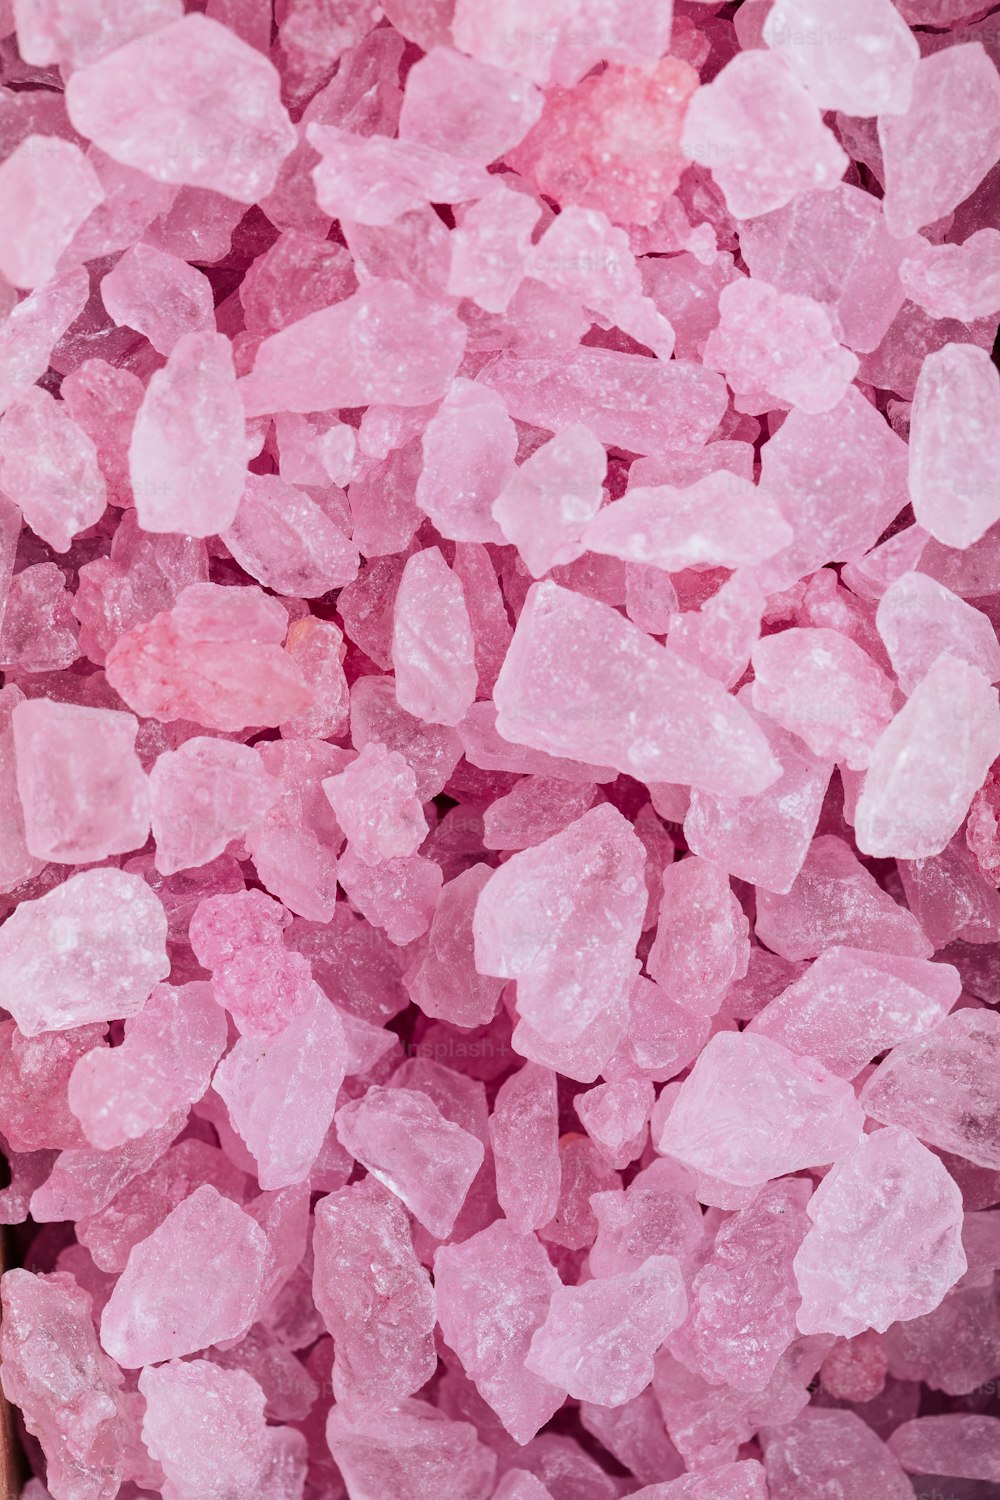 테이블 위에 앉아 있는 분홍색 설탕 결정 더미